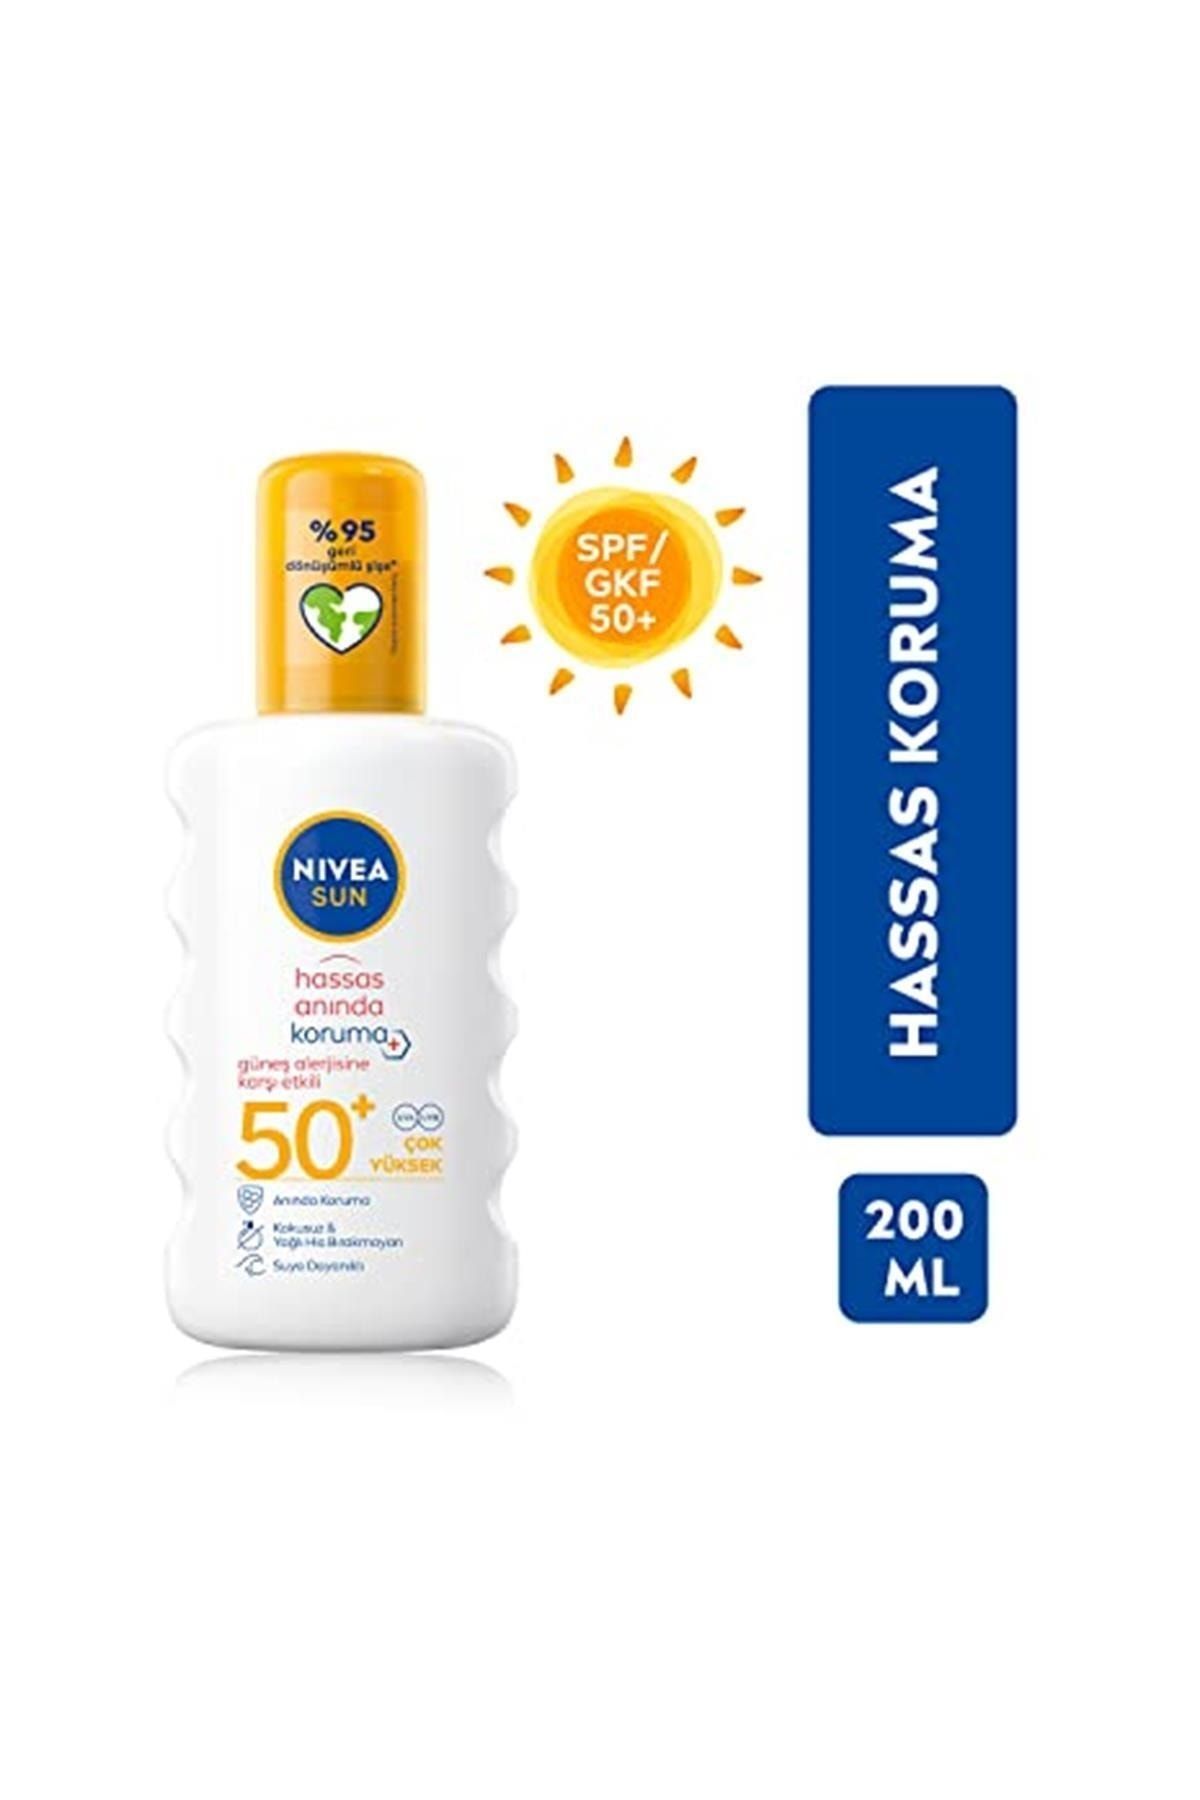 NIVEA ضدآفتاب اسپری فوری SPF 50+ مقابل حساسیت‌های آفتابی 200 میلی‌لیتر بسیار با کیفیت بالا